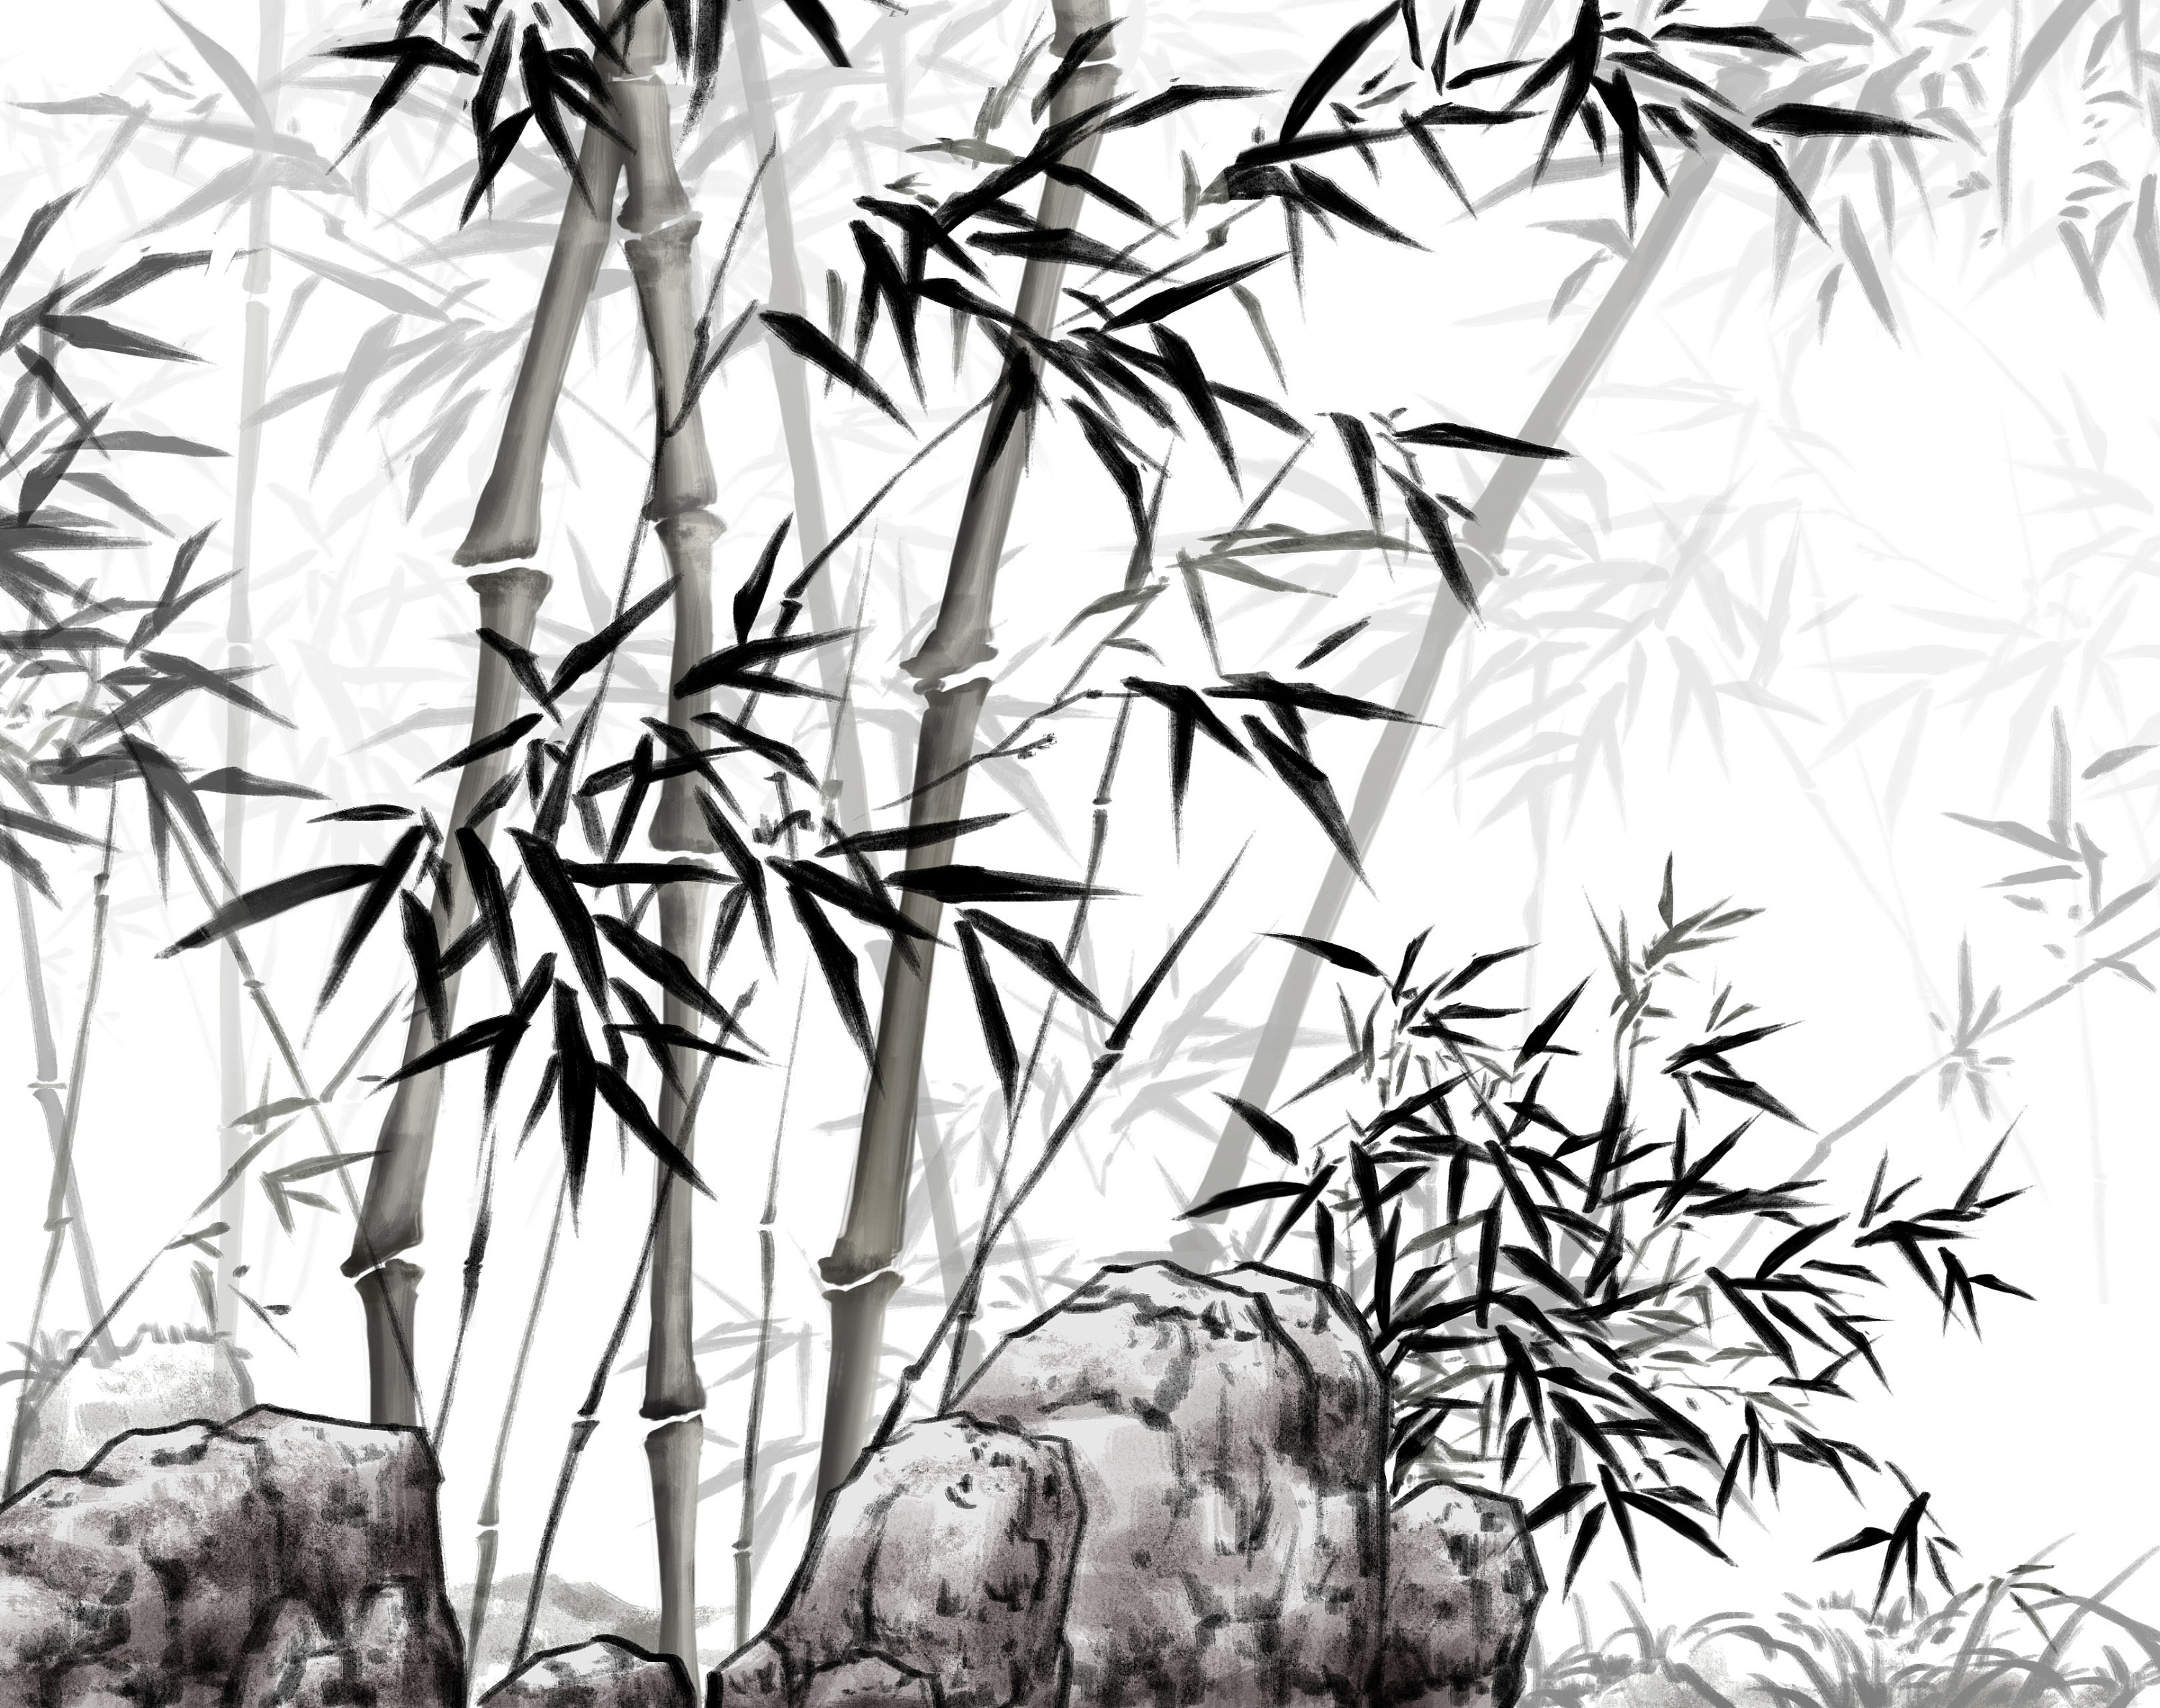 国画竹子的画法 - 竹子画 - 99字画网